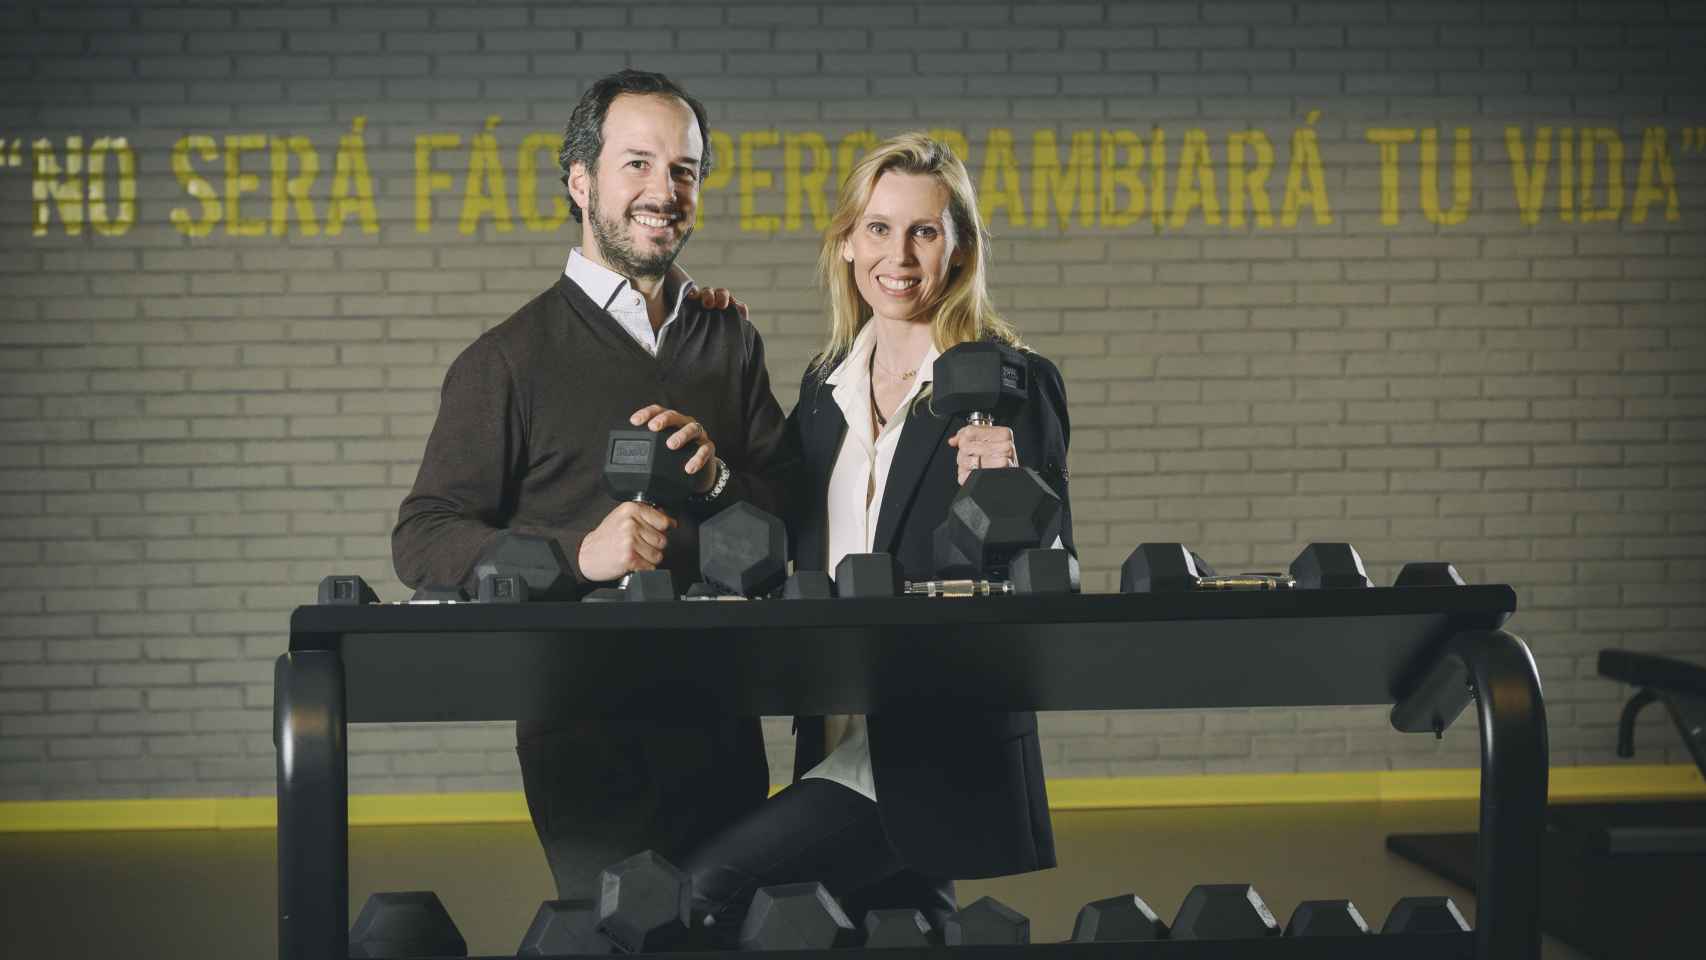 Sara Álvarez y Jorge Facha, dos empresarios mexicanos que han creado una alternativa al gimnasio.